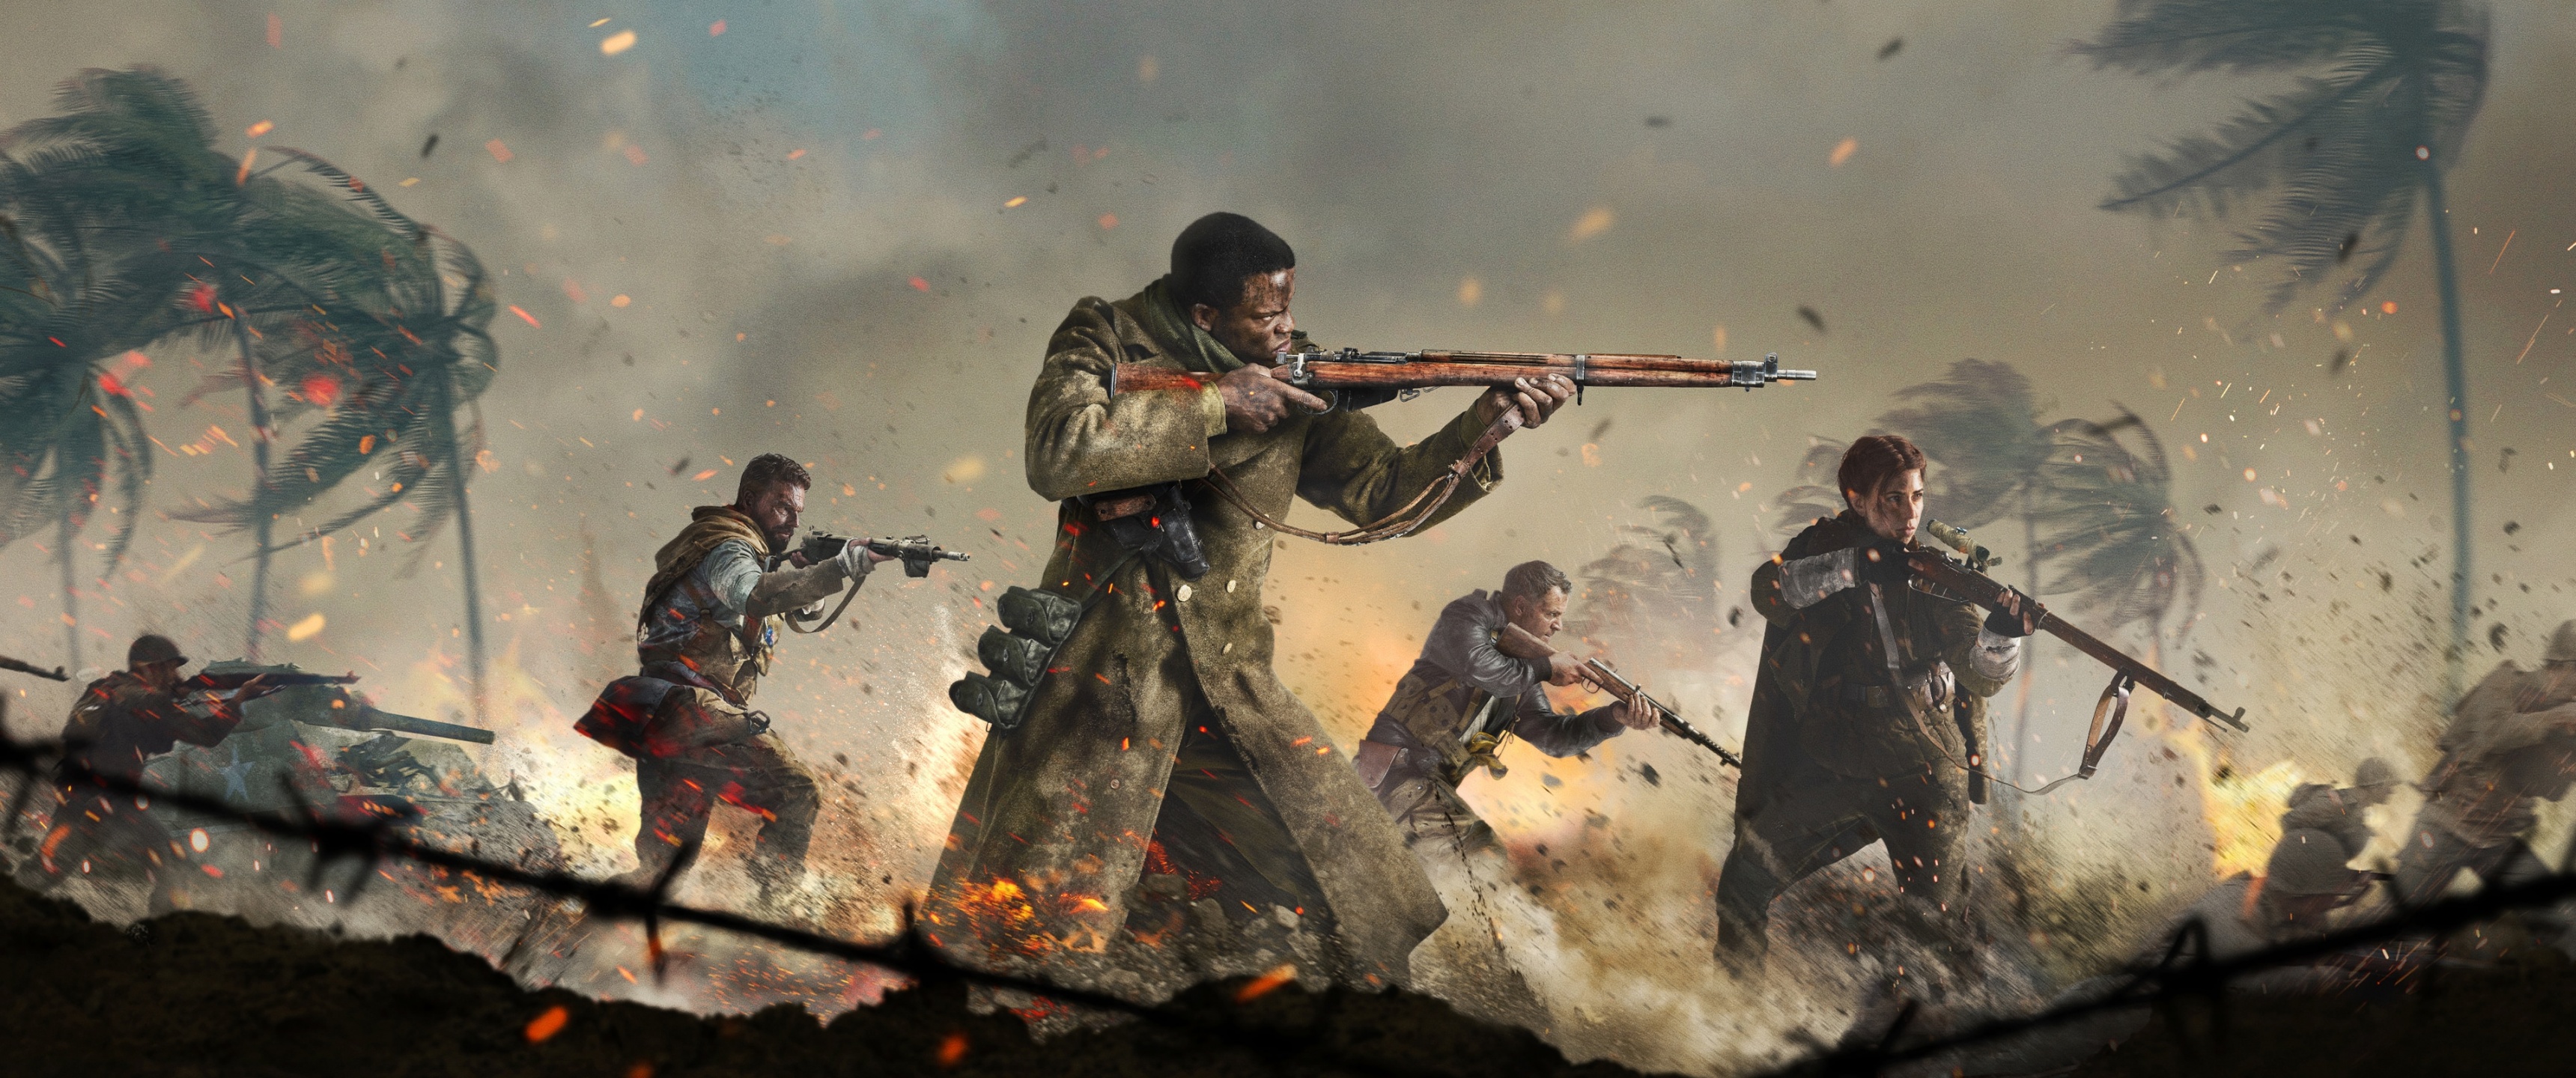 Call of Duty là một trong những trò chơi hành động đánh đấm tuyệt vời nhất mọi thời đại. Với đồ họa tuyệt đẹp và nhiều tính năng hấp dẫn, trò chơi sẽ đưa bạn vào một trận chiến cam go để bảo vệ thế giới. 